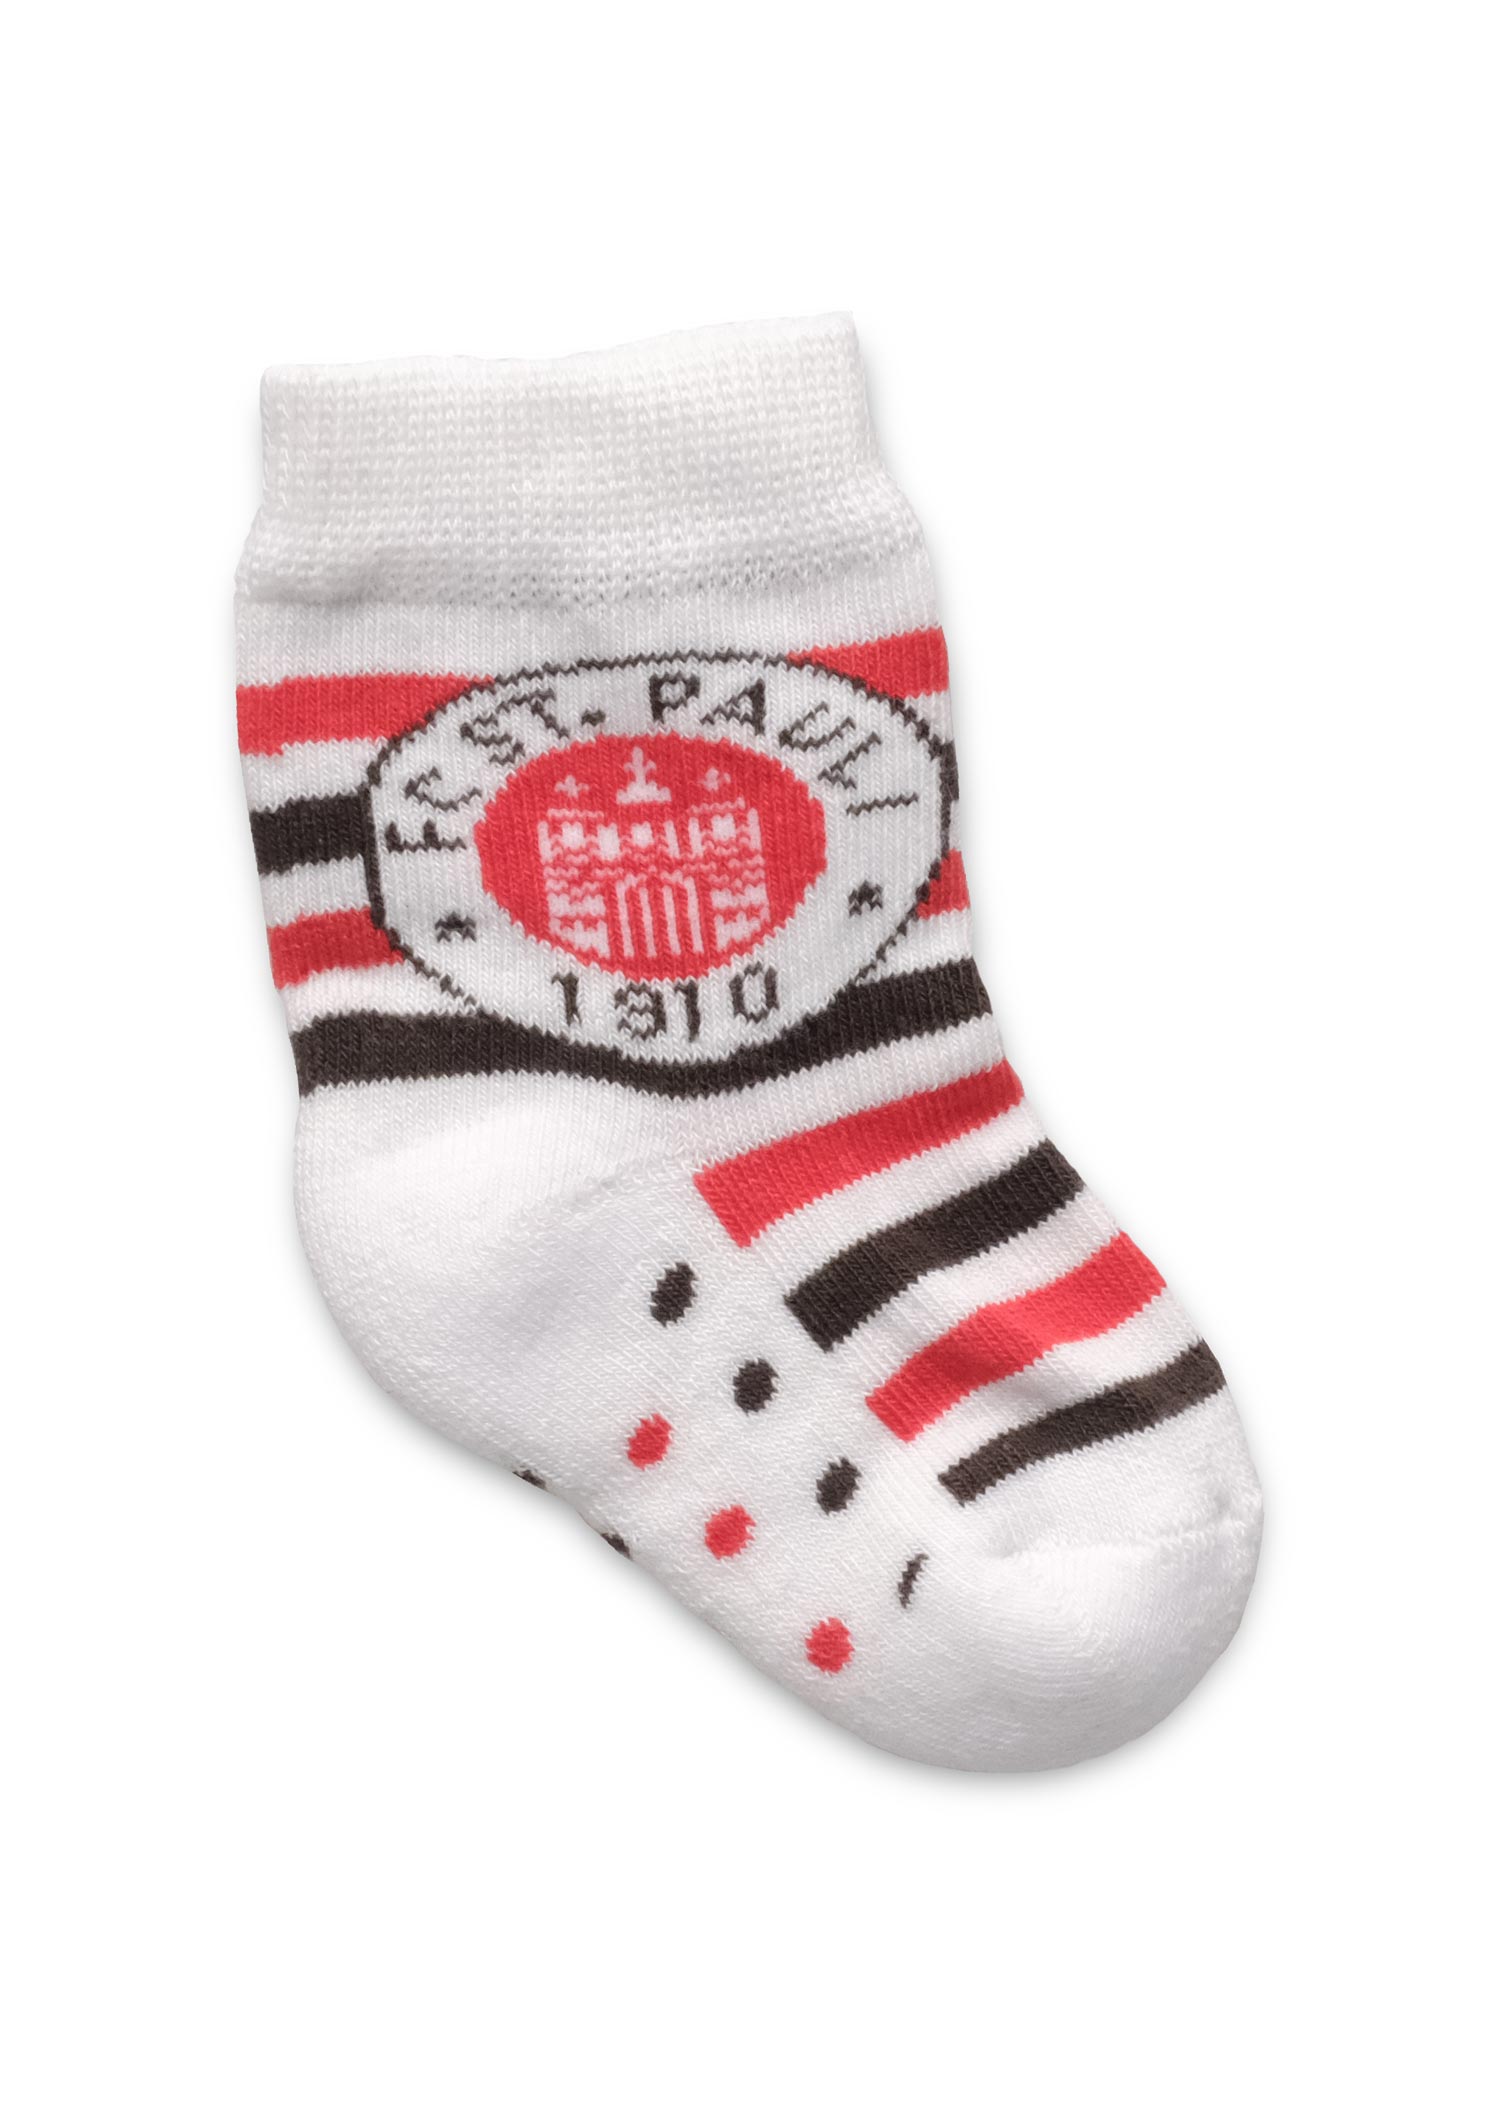 Baby Socken Logo braun-weiß-rot gestreift